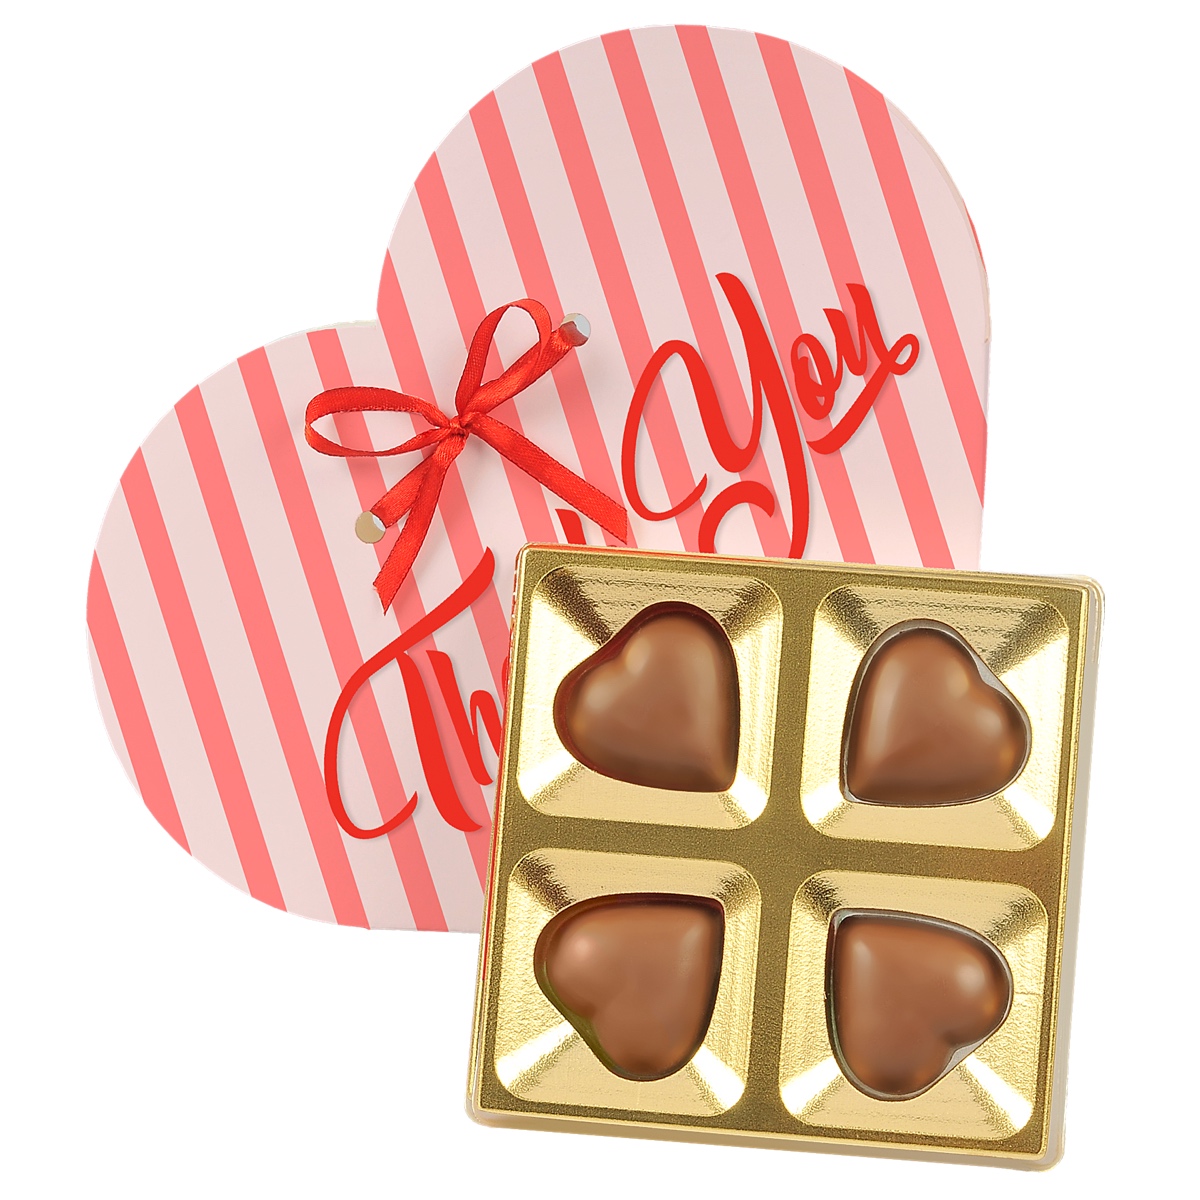 czekoladki w kształcie serca